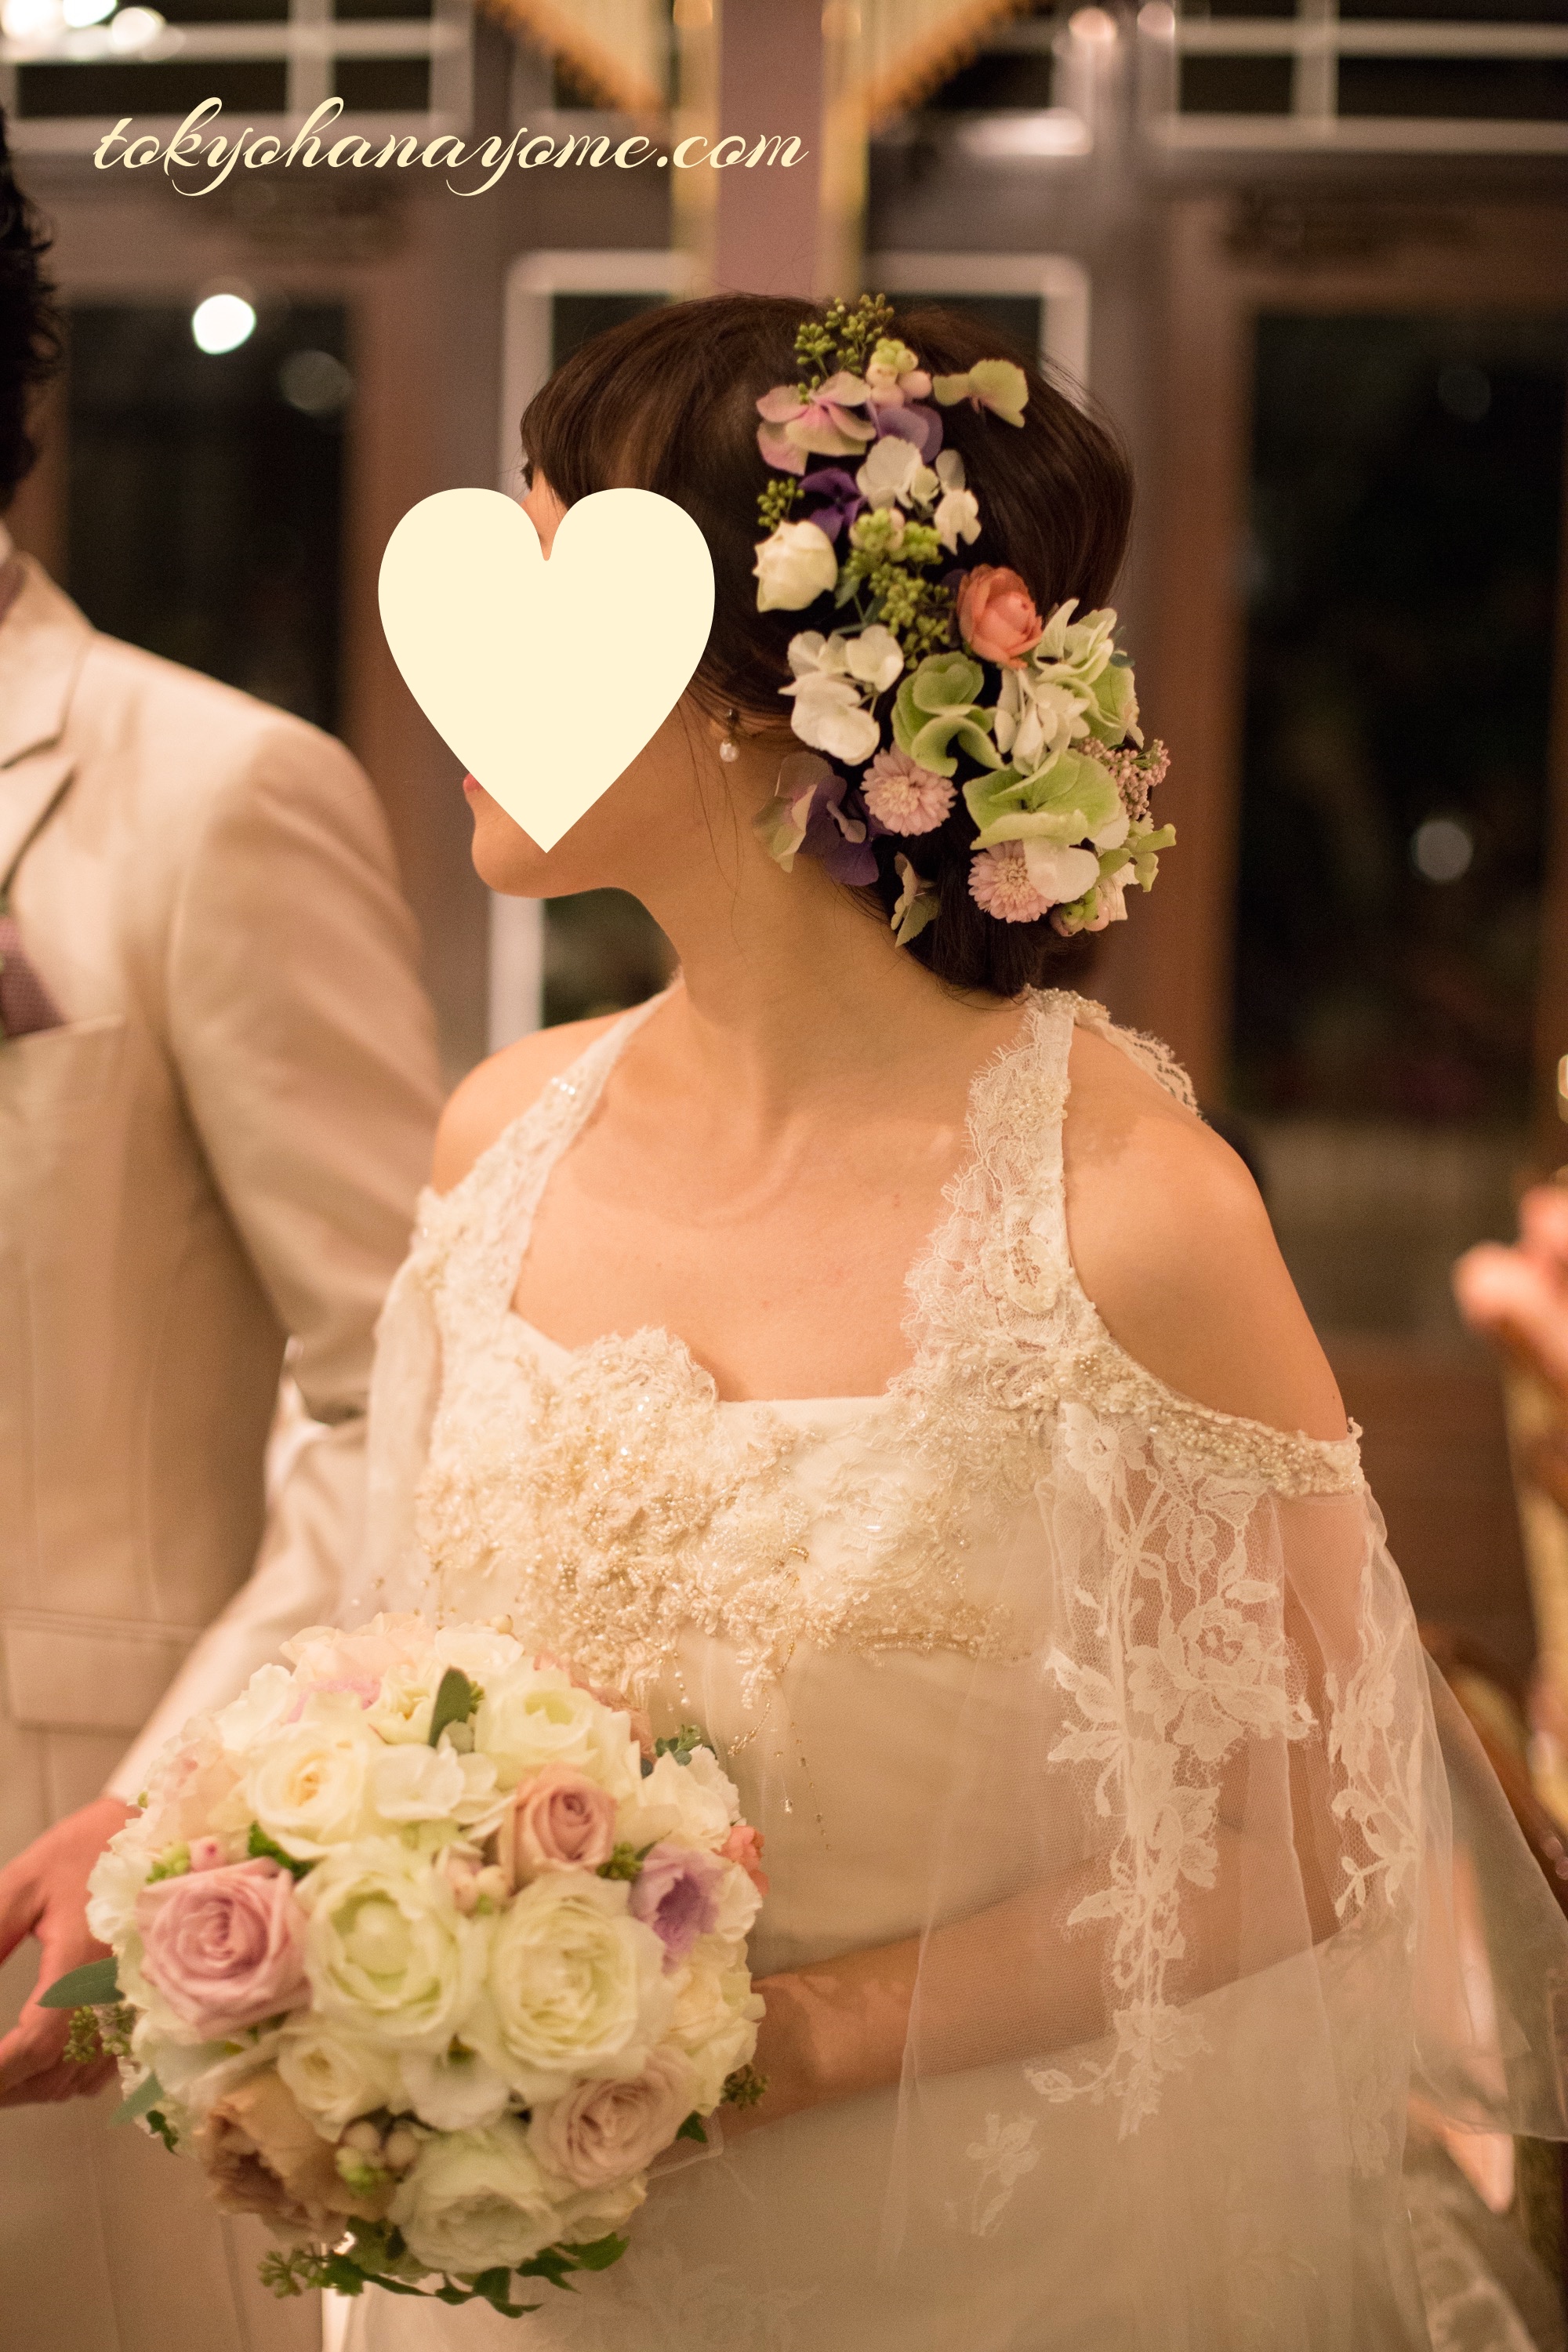 【実際に】結婚式で後悔したことランキング。 結婚式準備のことなら東京ハナヨメブログ